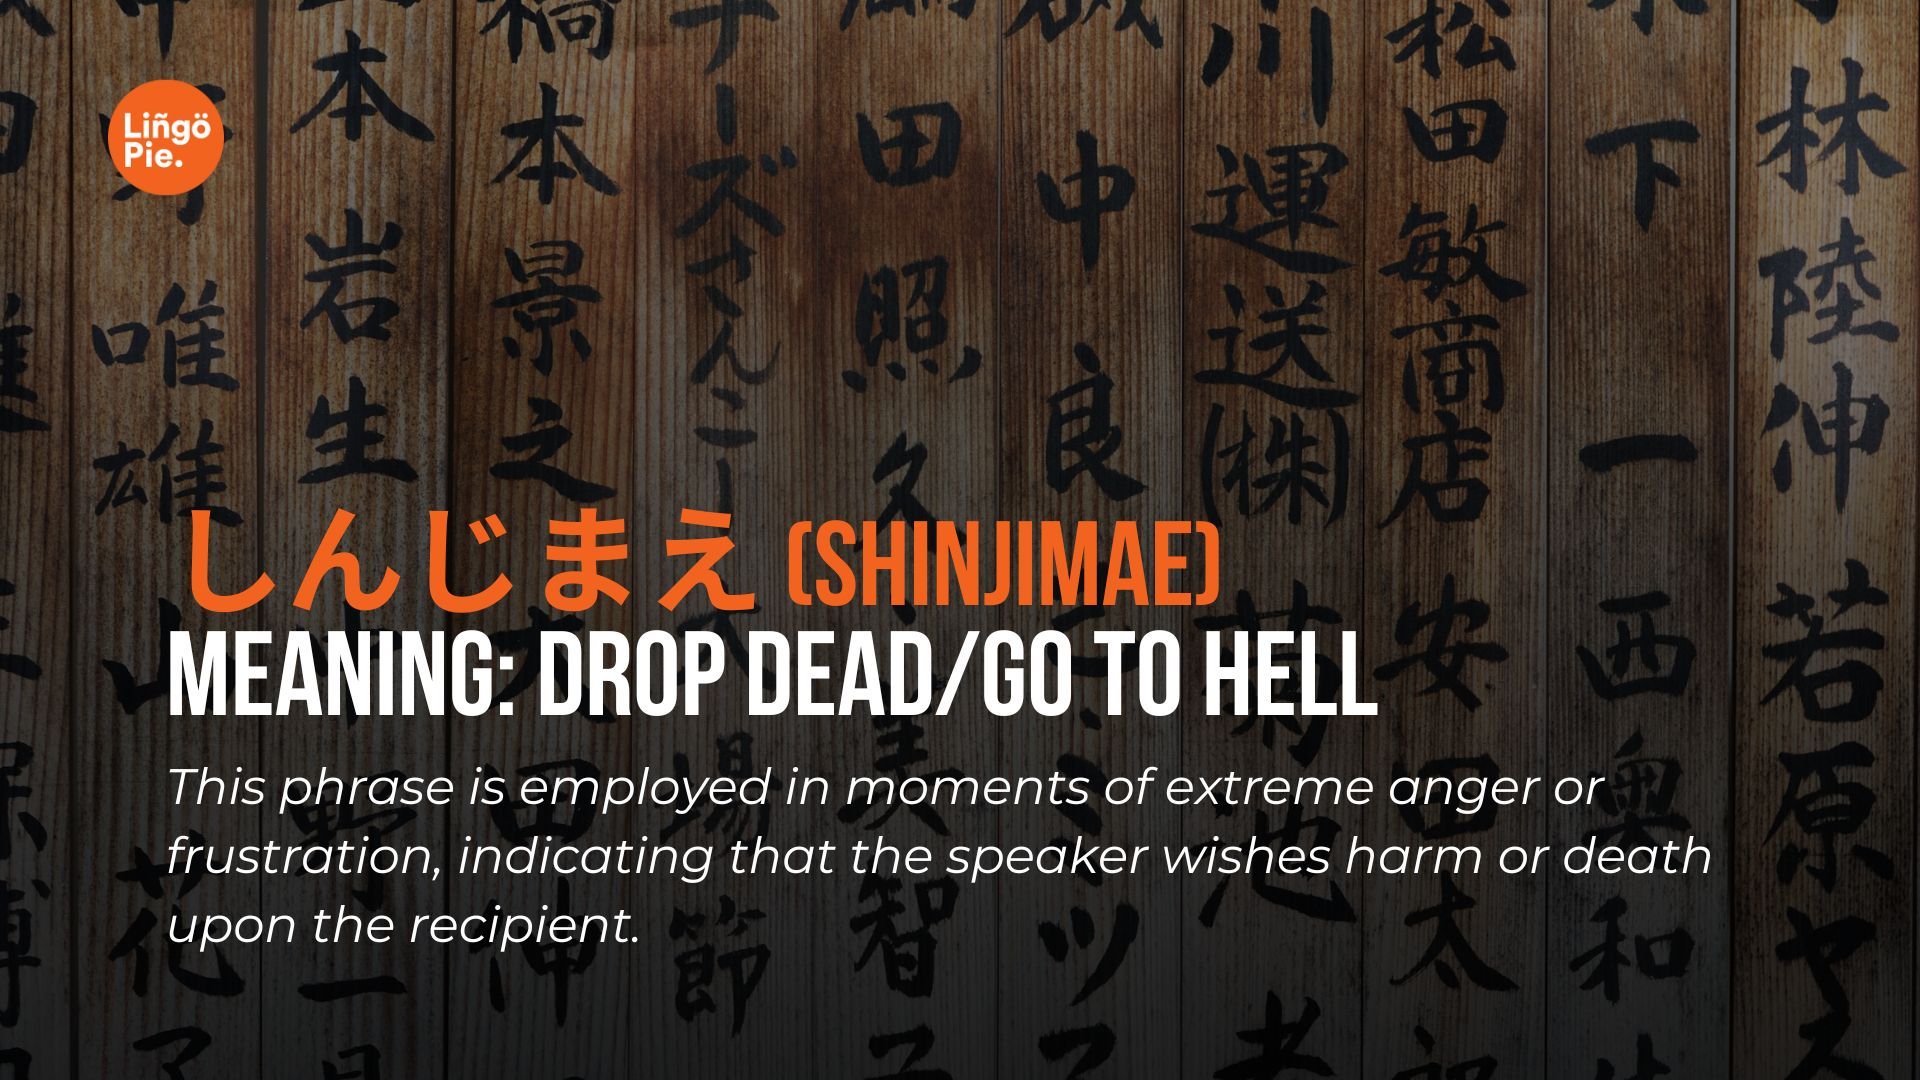 しんじまえ (Shinjimae) - Japanese Curse Word and Japanese insult 